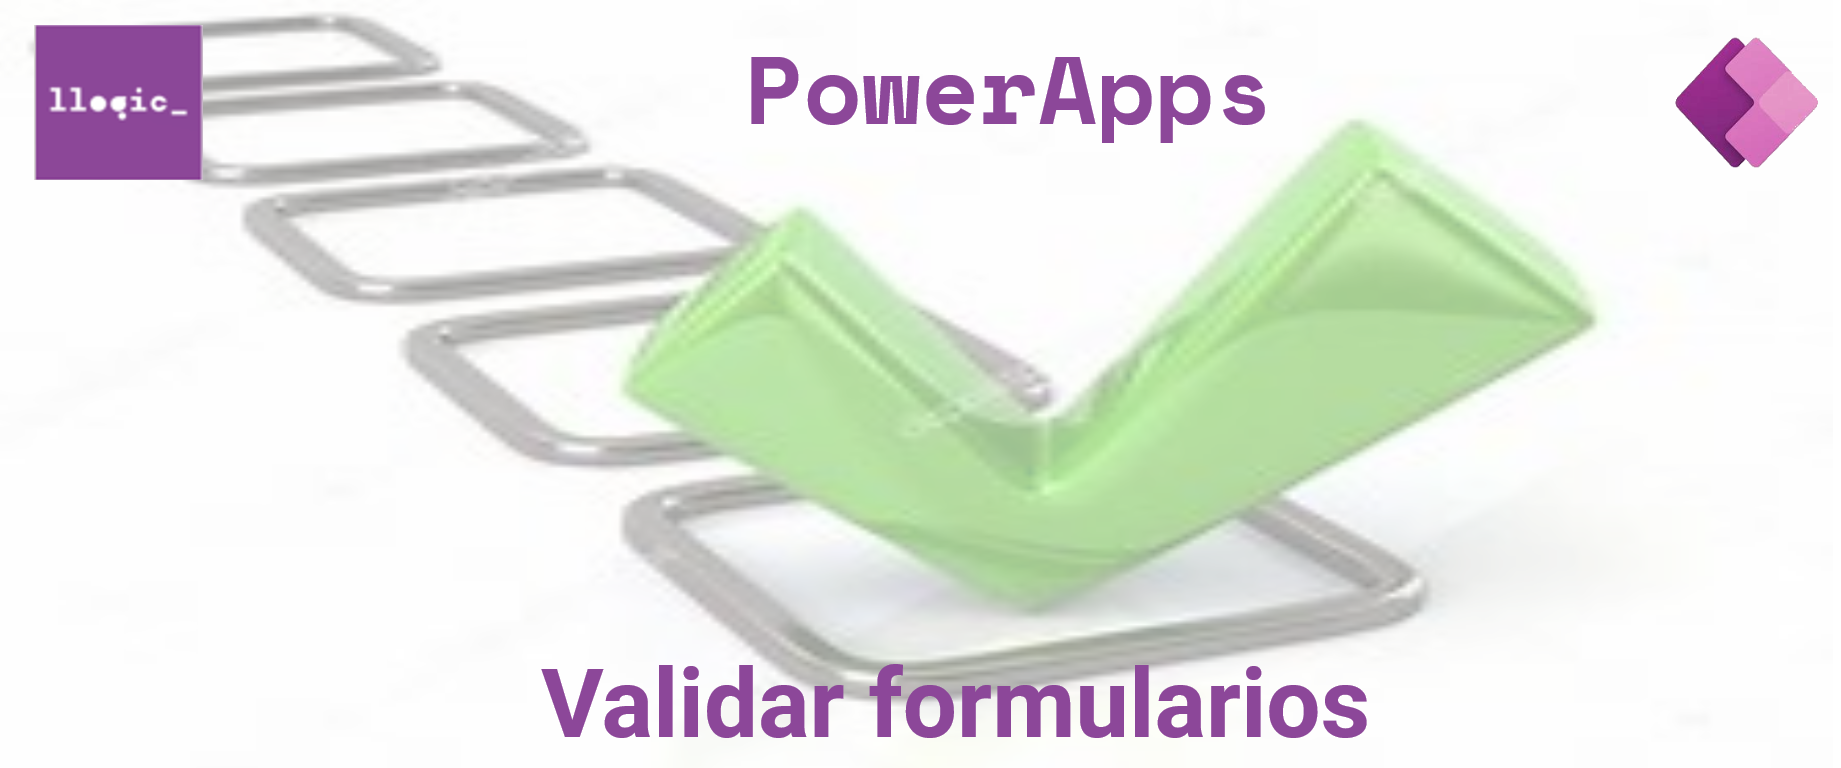 PowerApps. Validación de formularios